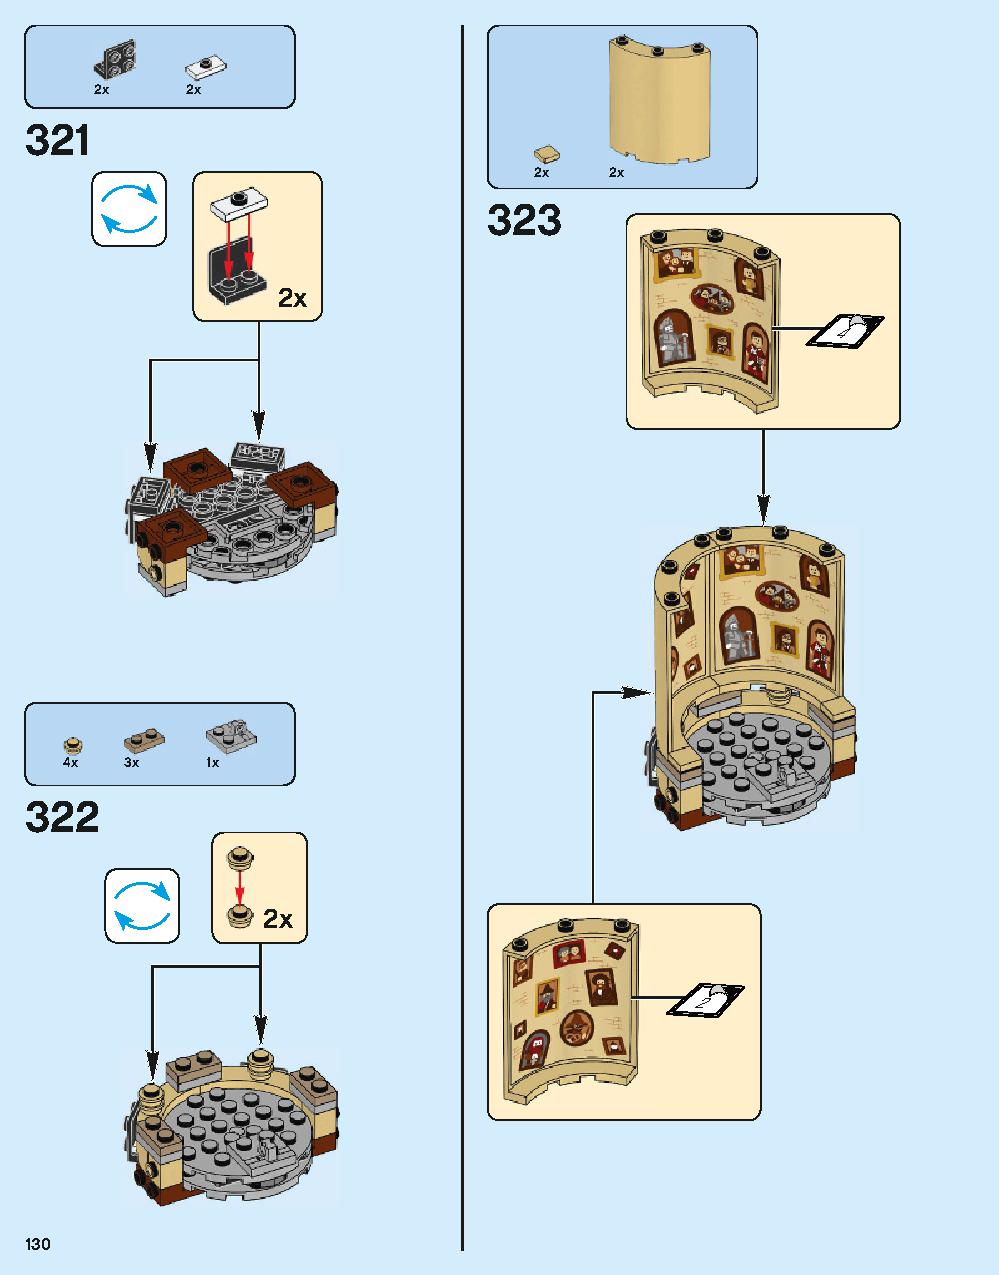 ホグワーツ城 71043 レゴの商品情報 レゴの説明書・組立方法 130 page